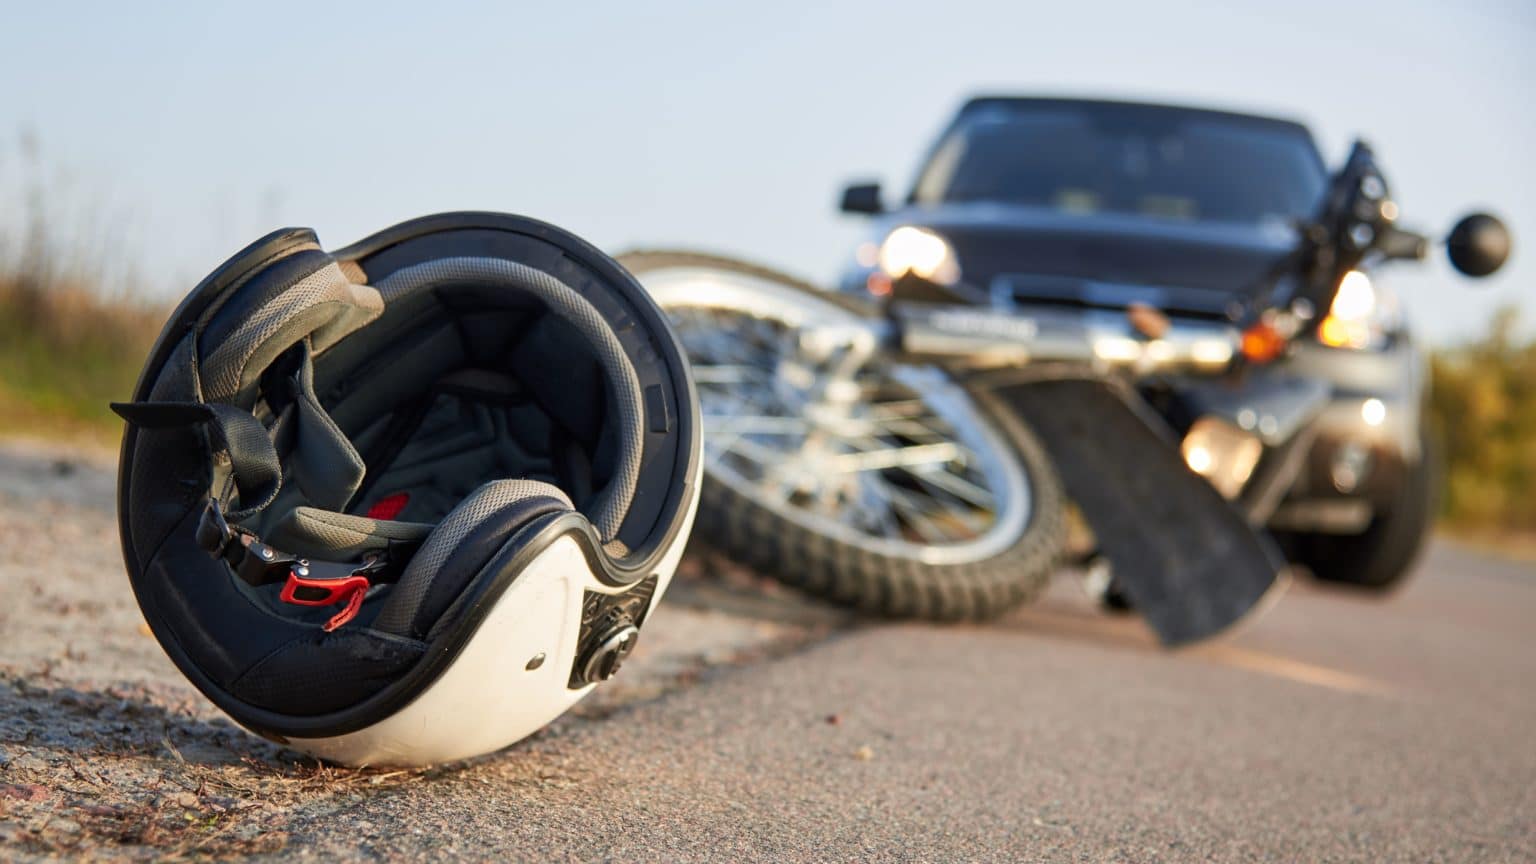 Radučić: Motociklist teško ozlijeđen nakon pada u nepreglednom zavoju